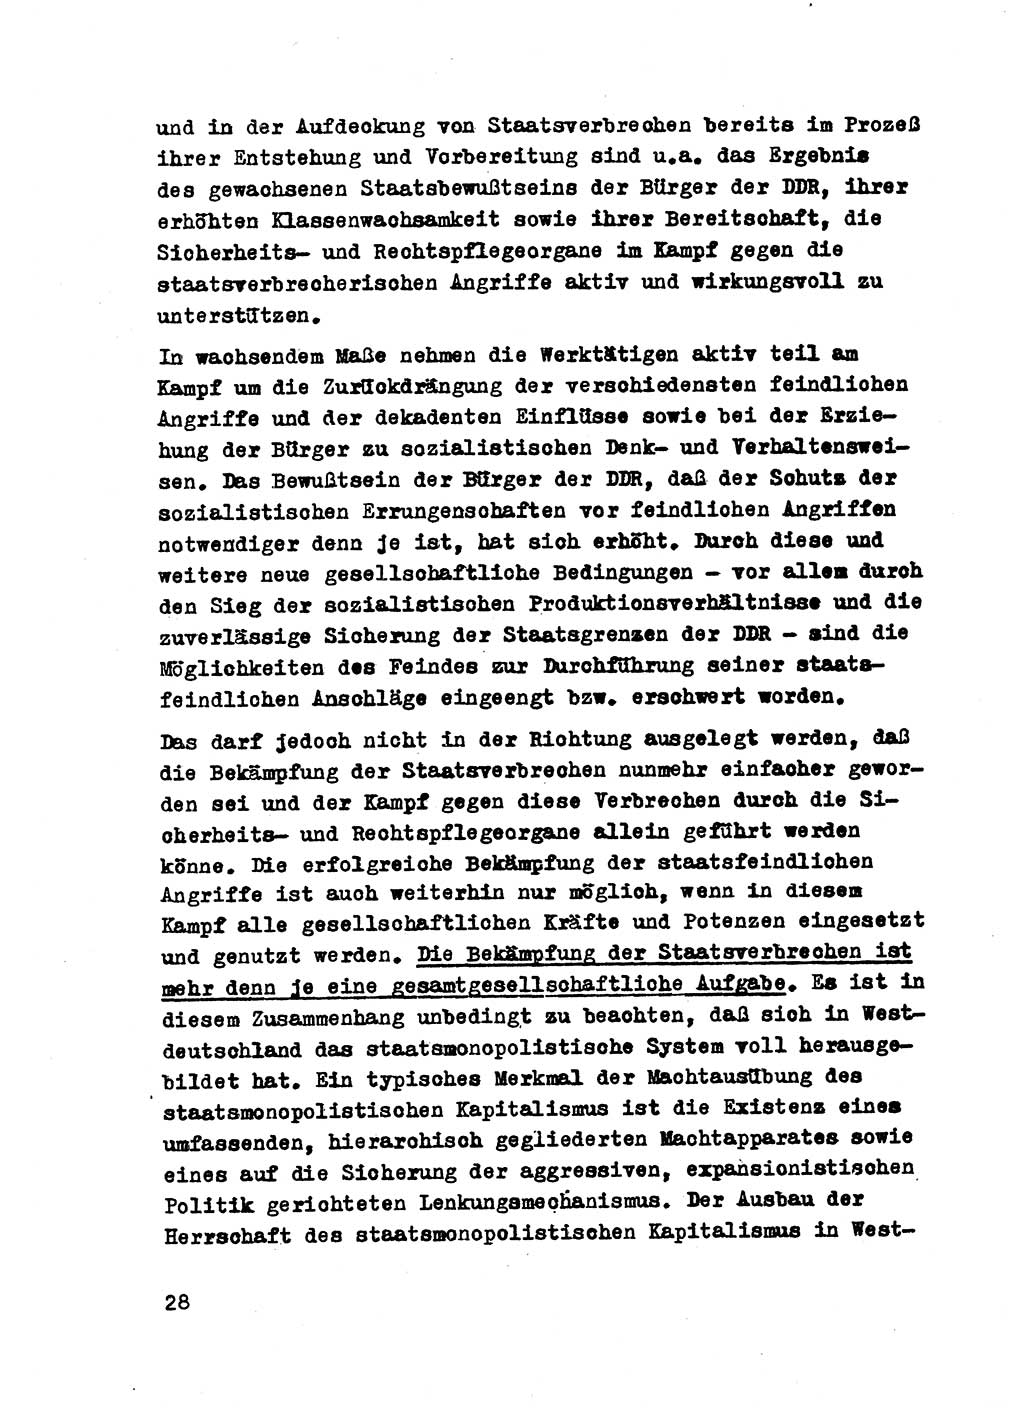 Strafrecht der DDR (Deutsche Demokratische Republik), Besonderer Teil, Lehrmaterial, Heft 2 1969, Seite 28 (Strafr. DDR BT Lehrmat. H. 2 1969, S. 28)